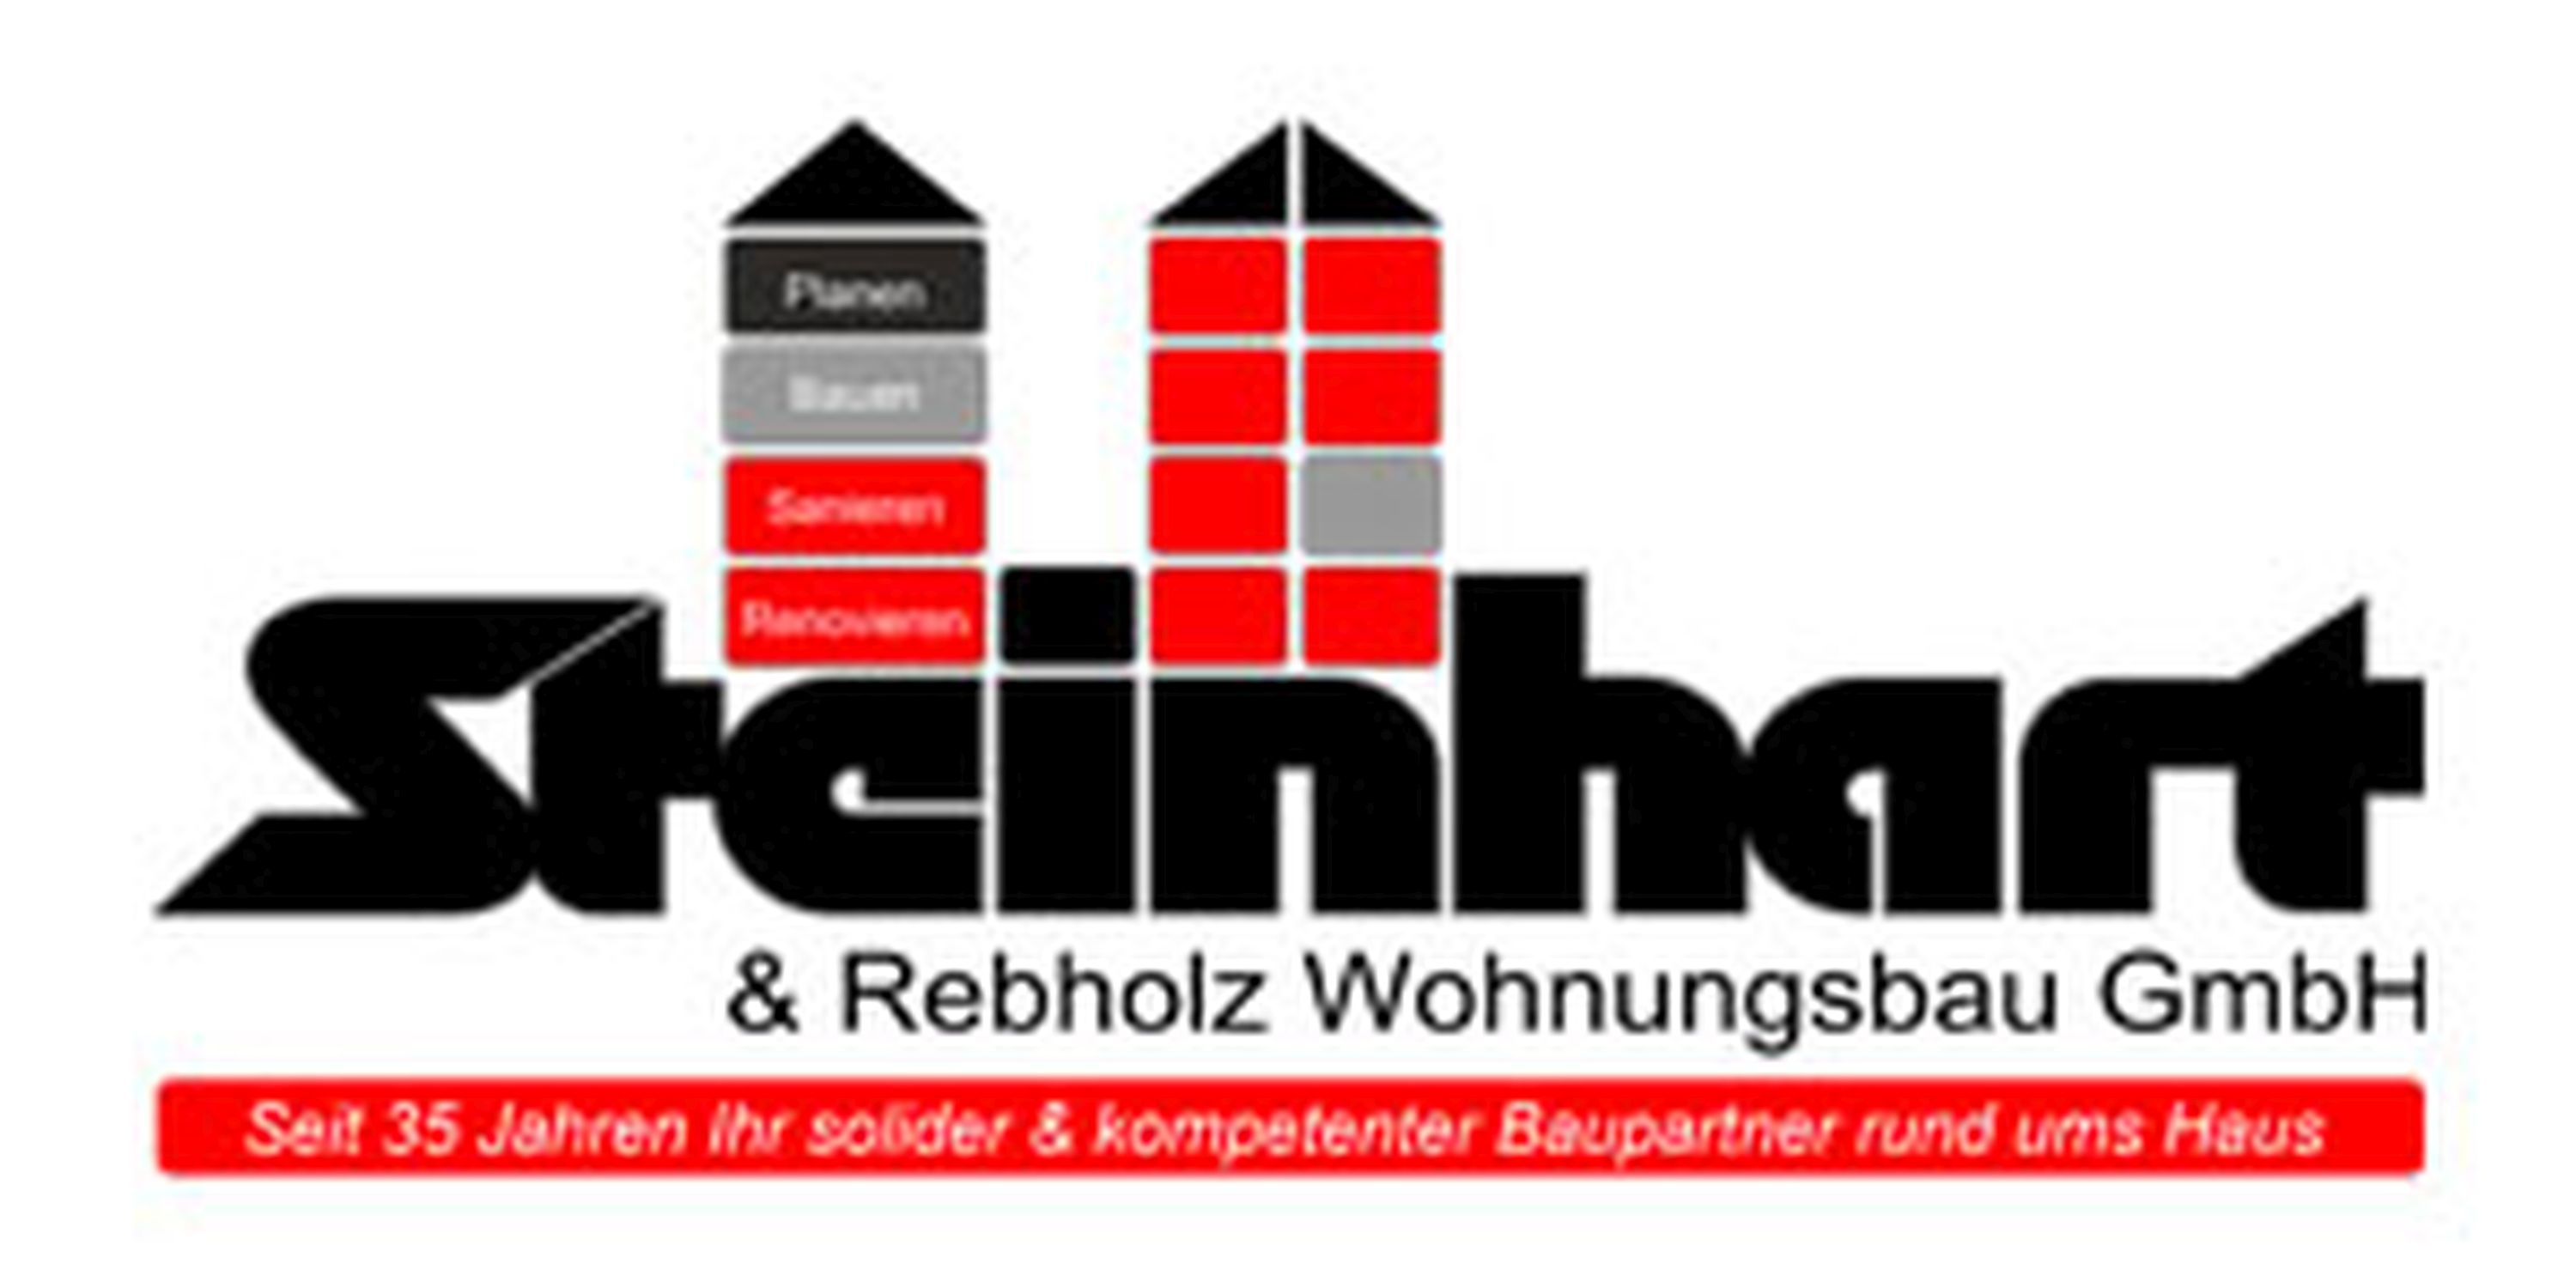 Steinhart & Rebholz Wohnungsbau GmbH